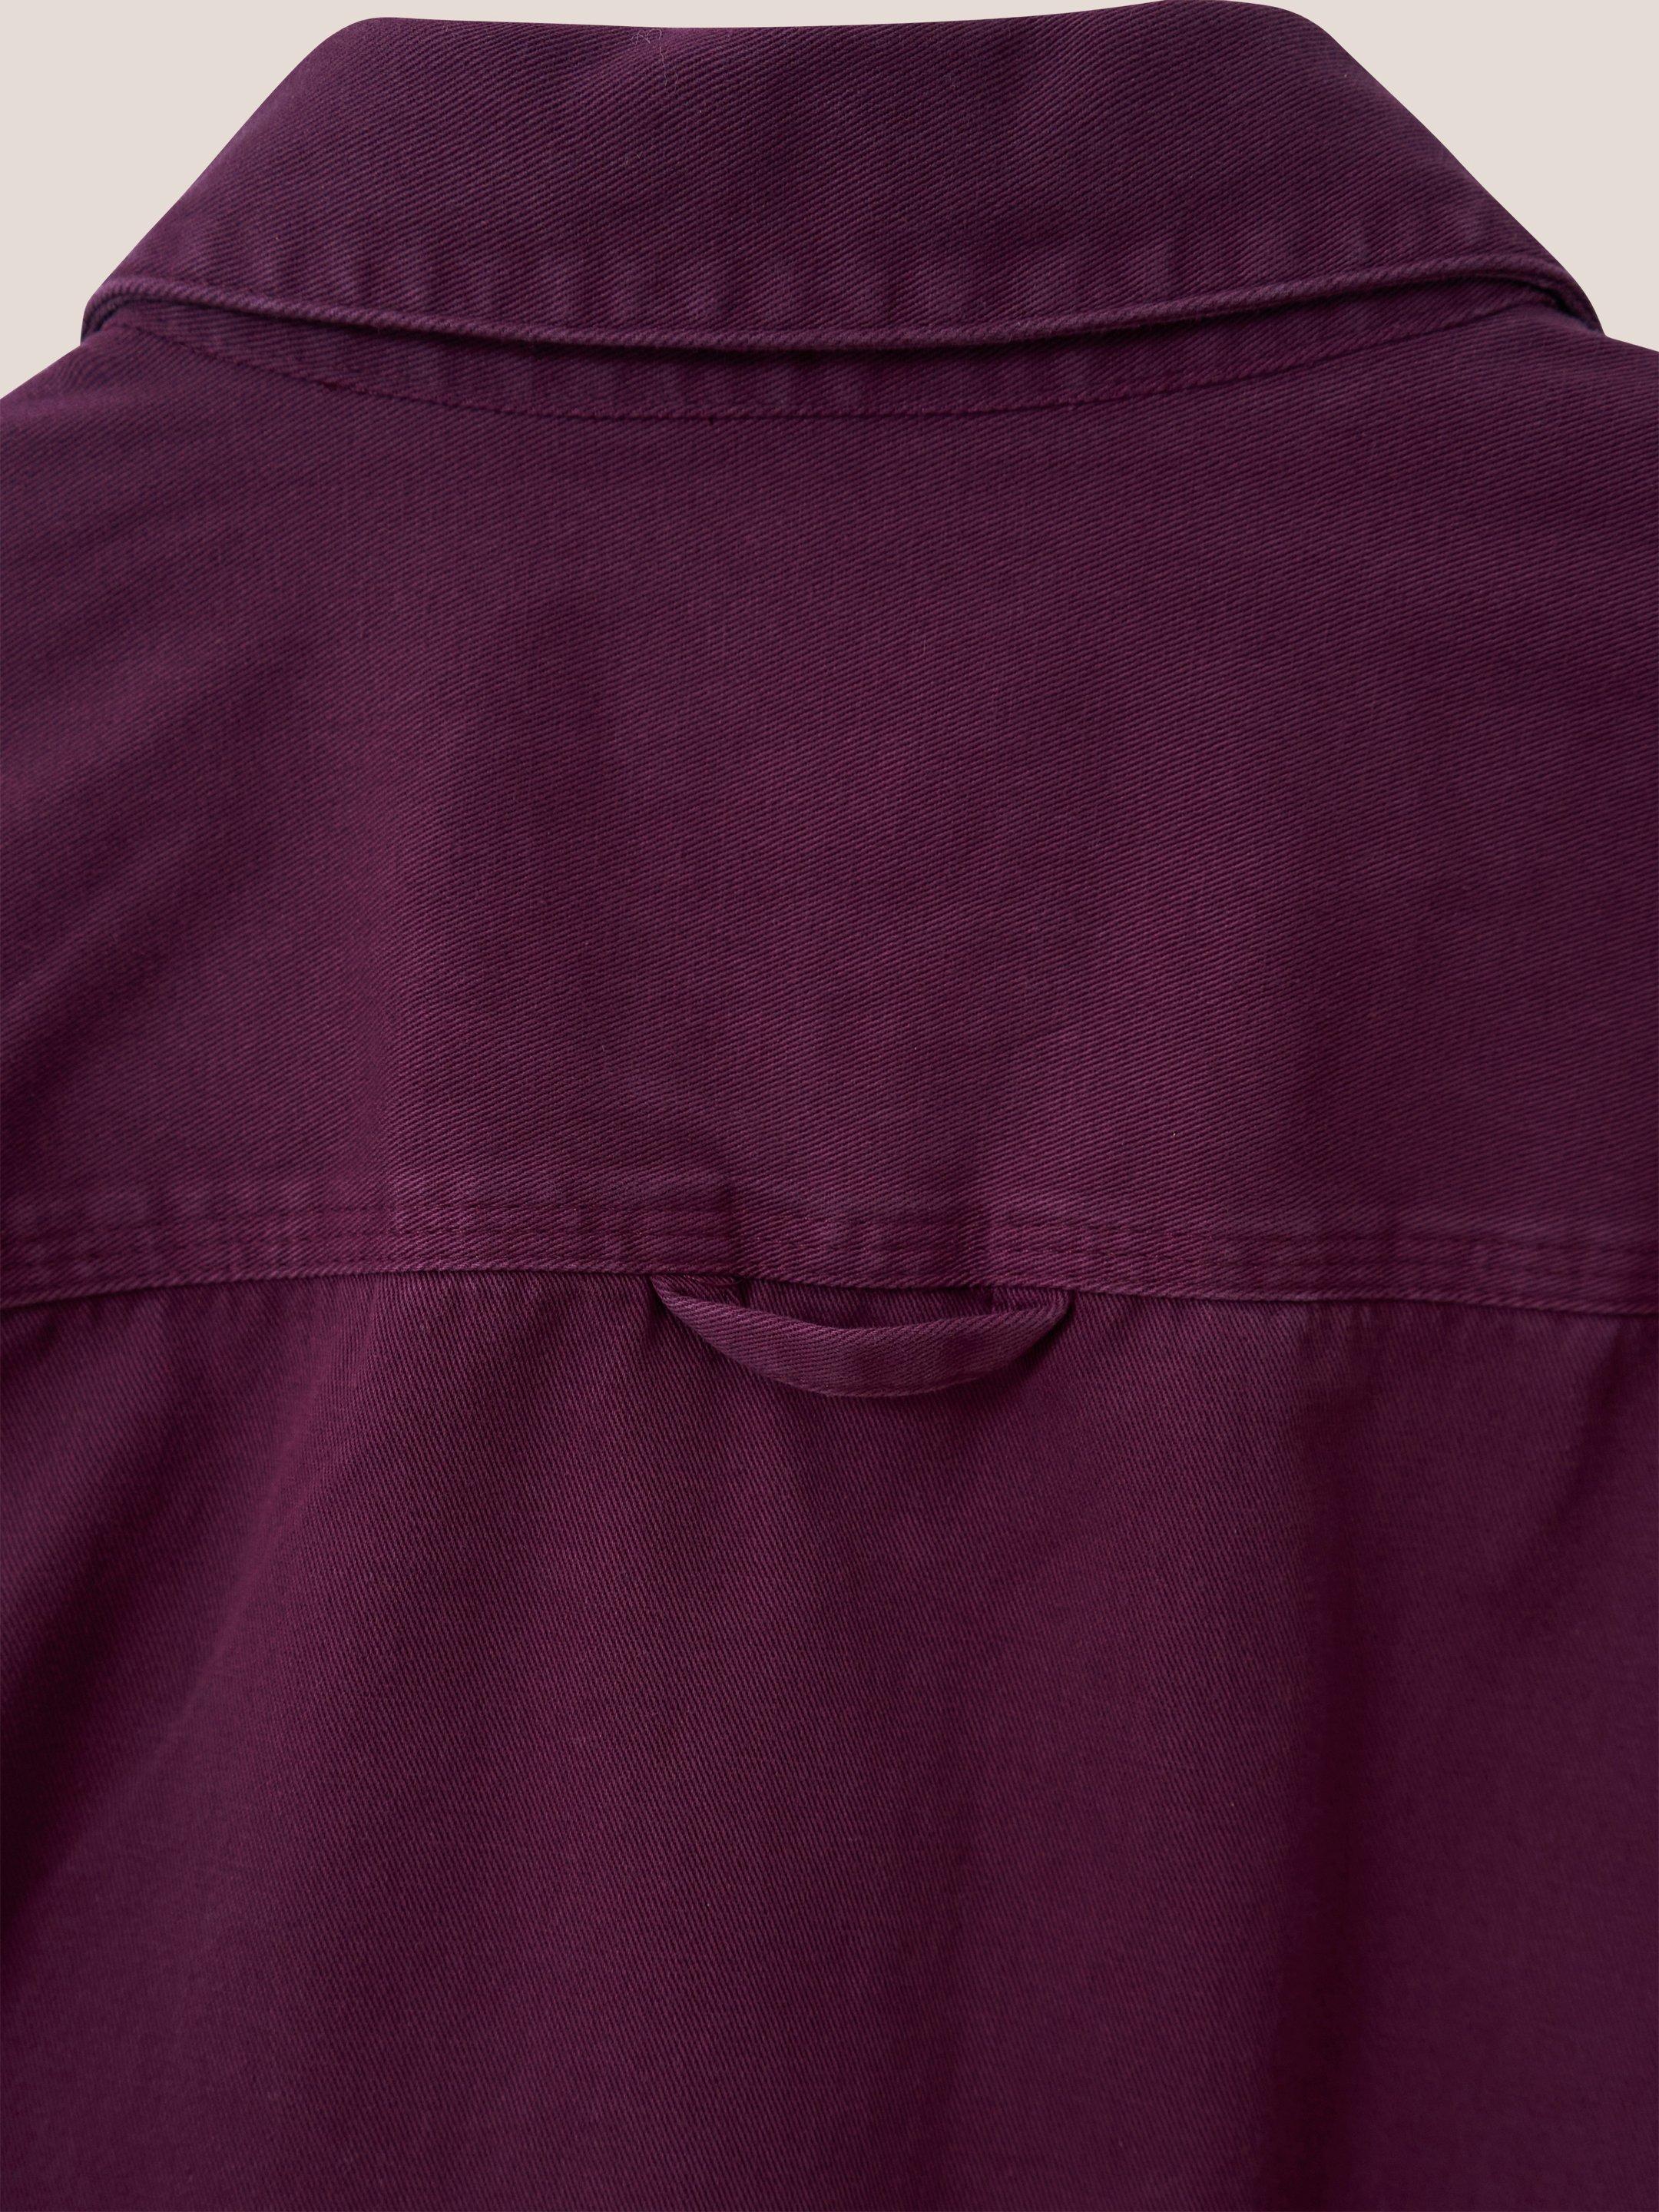 Furze Garment Dye Twill Shirt in MID PLUM - FLAT DETAIL